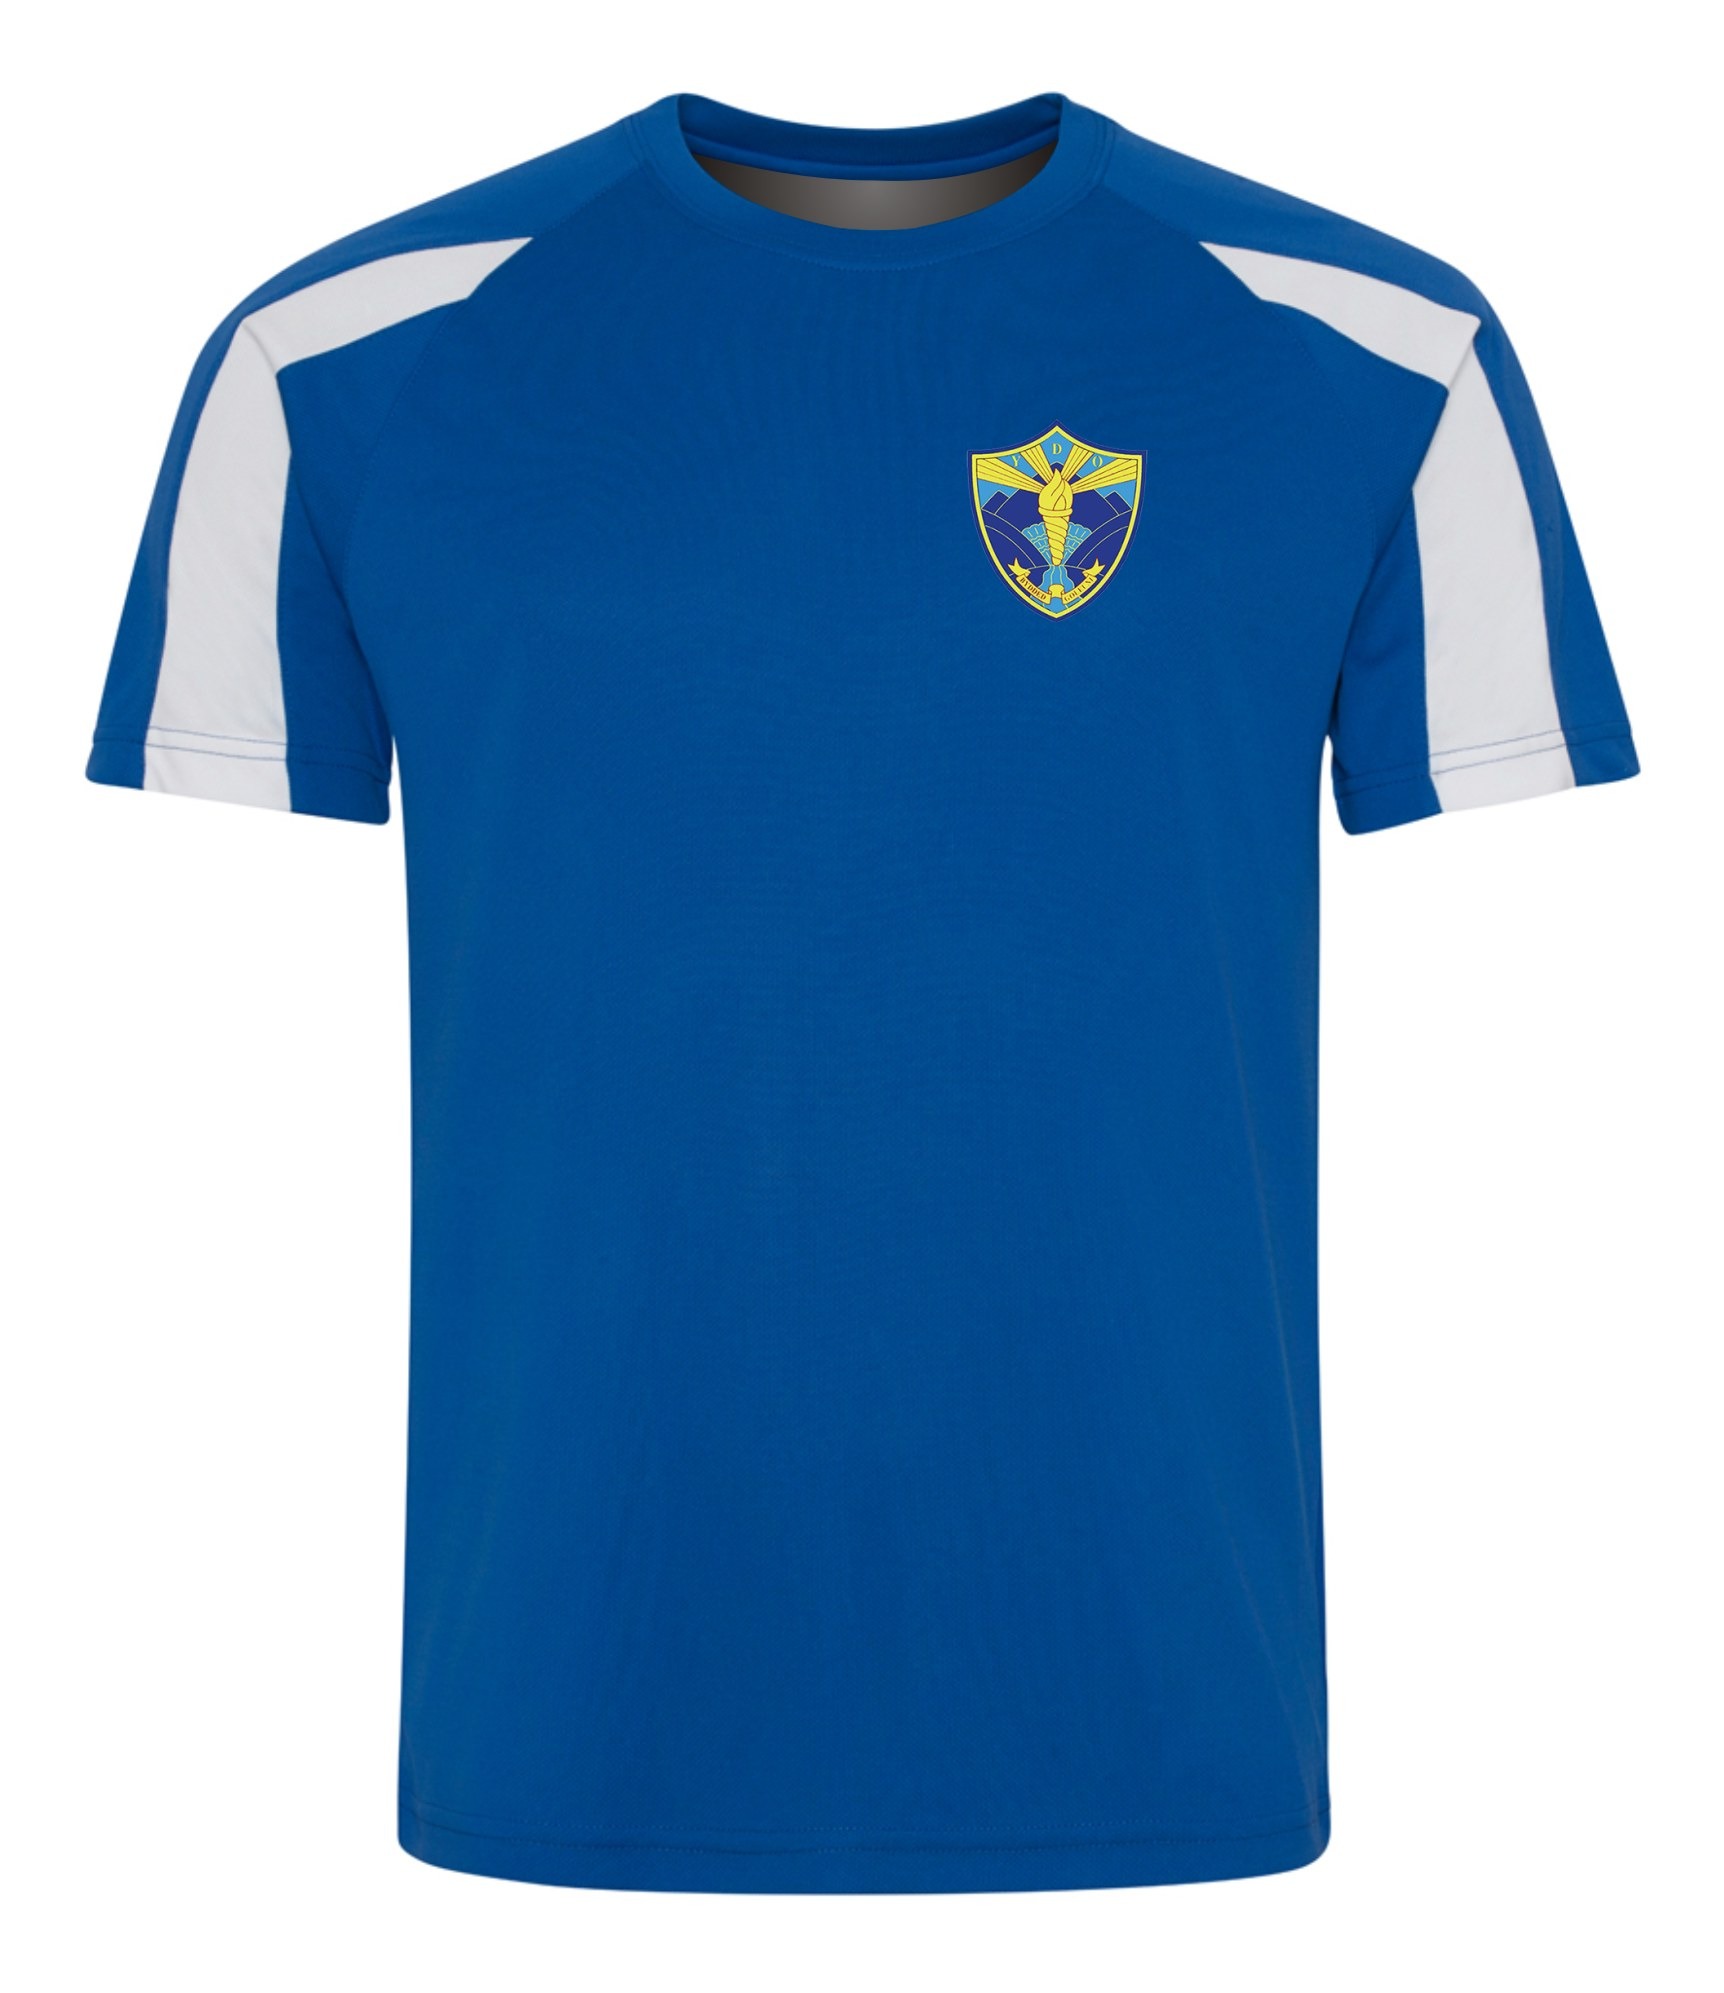 Ysgol Dyffryn Ogwen Junior PE T-Shirt - Teejac